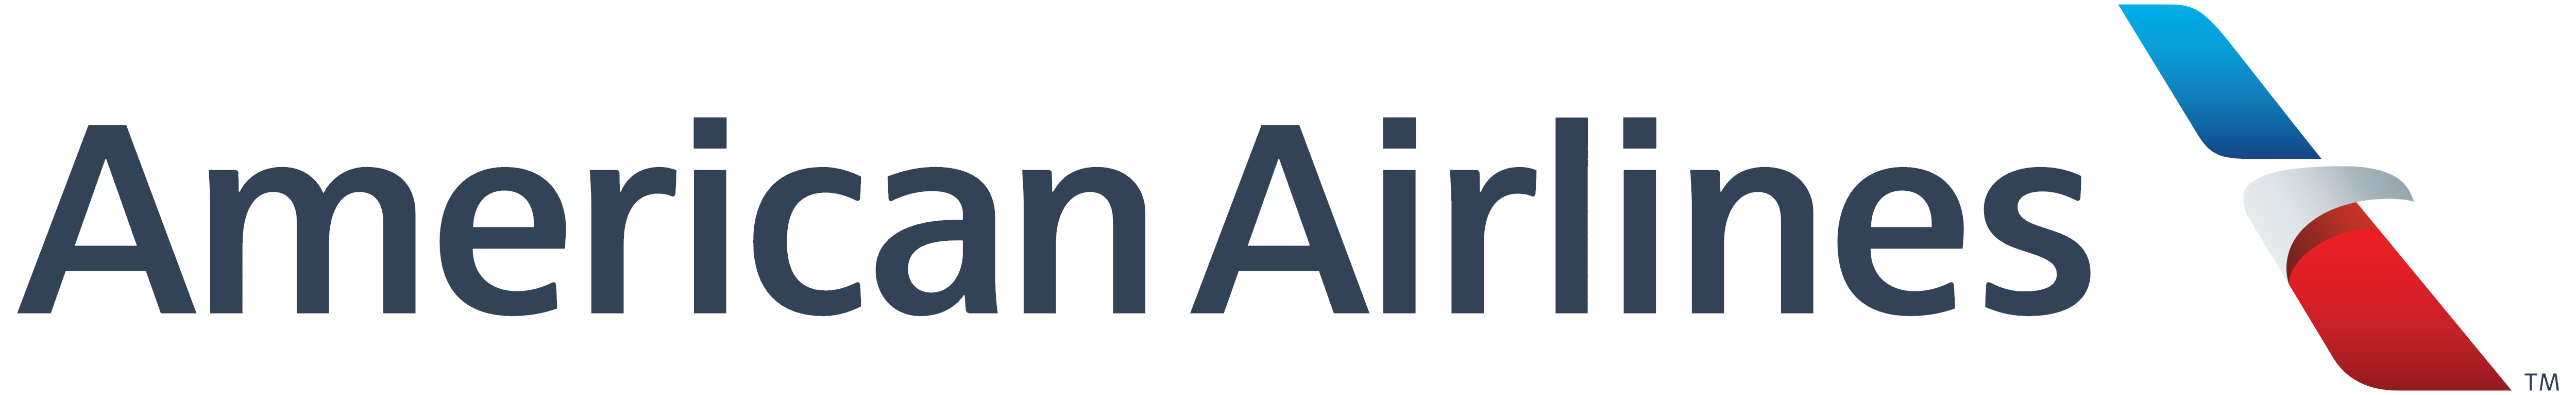 Logotipo delle compagnie aeree americane bianco